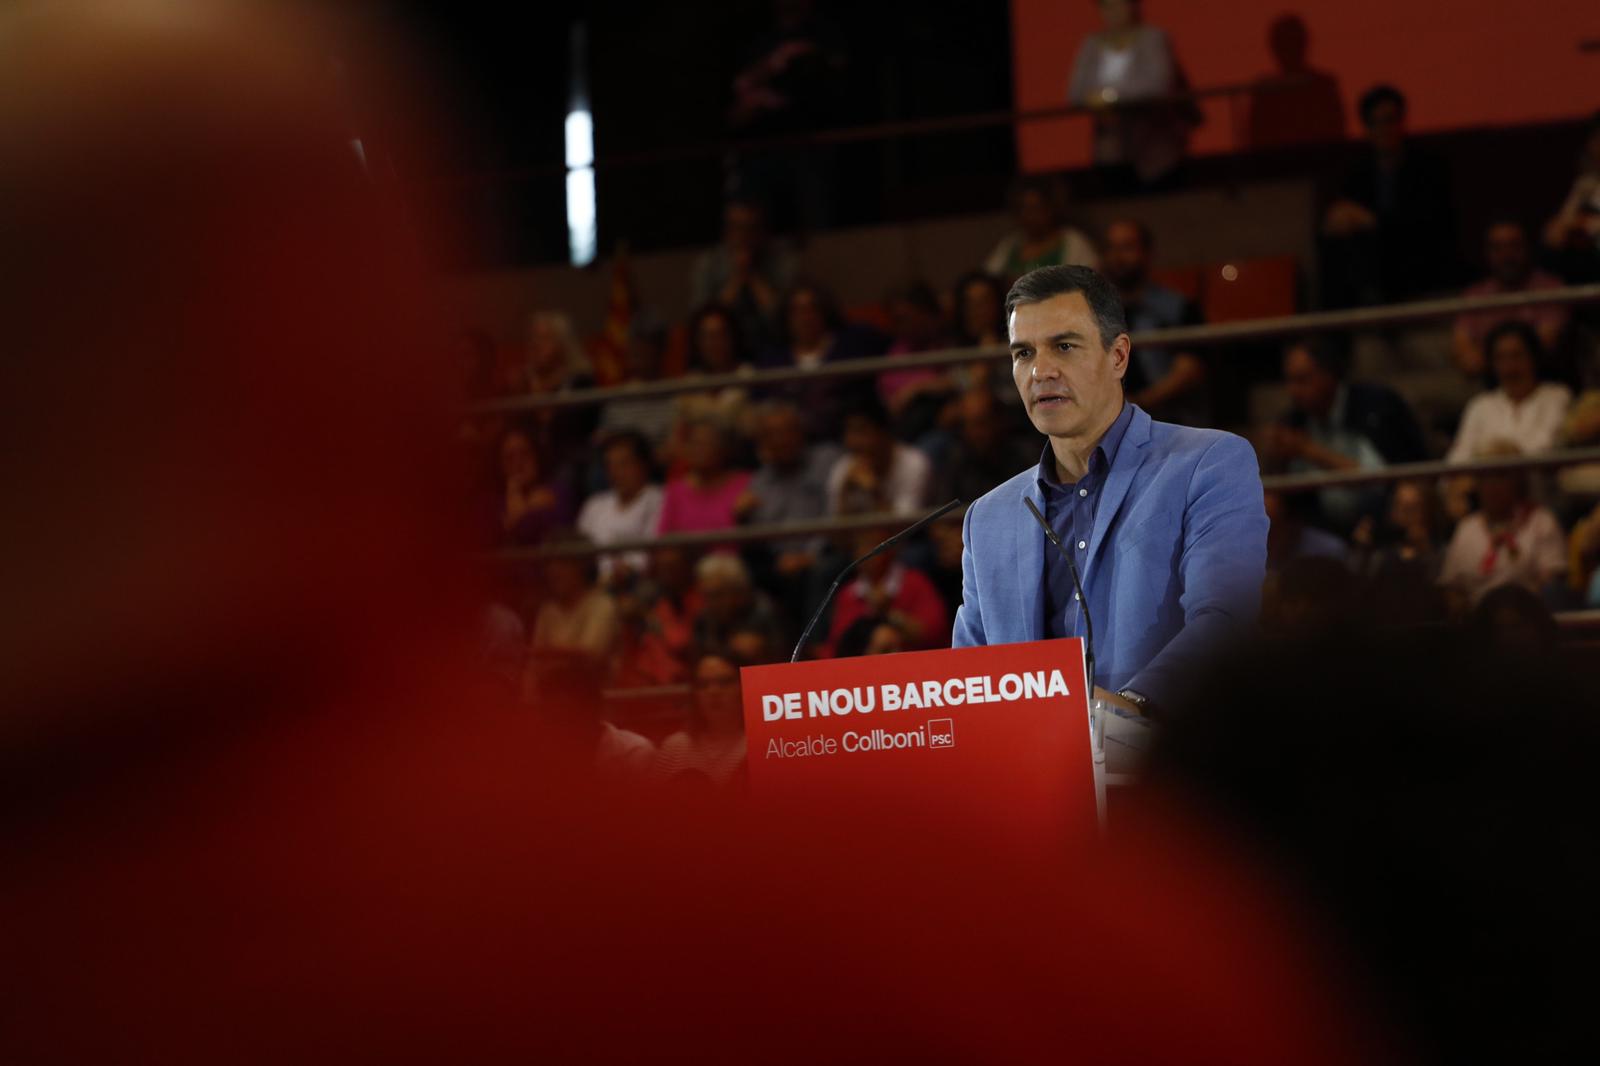 La Moncloa i el PSOE esvaeixen dubtes: Sánchez es presentarà a les eleccions generals anticipades